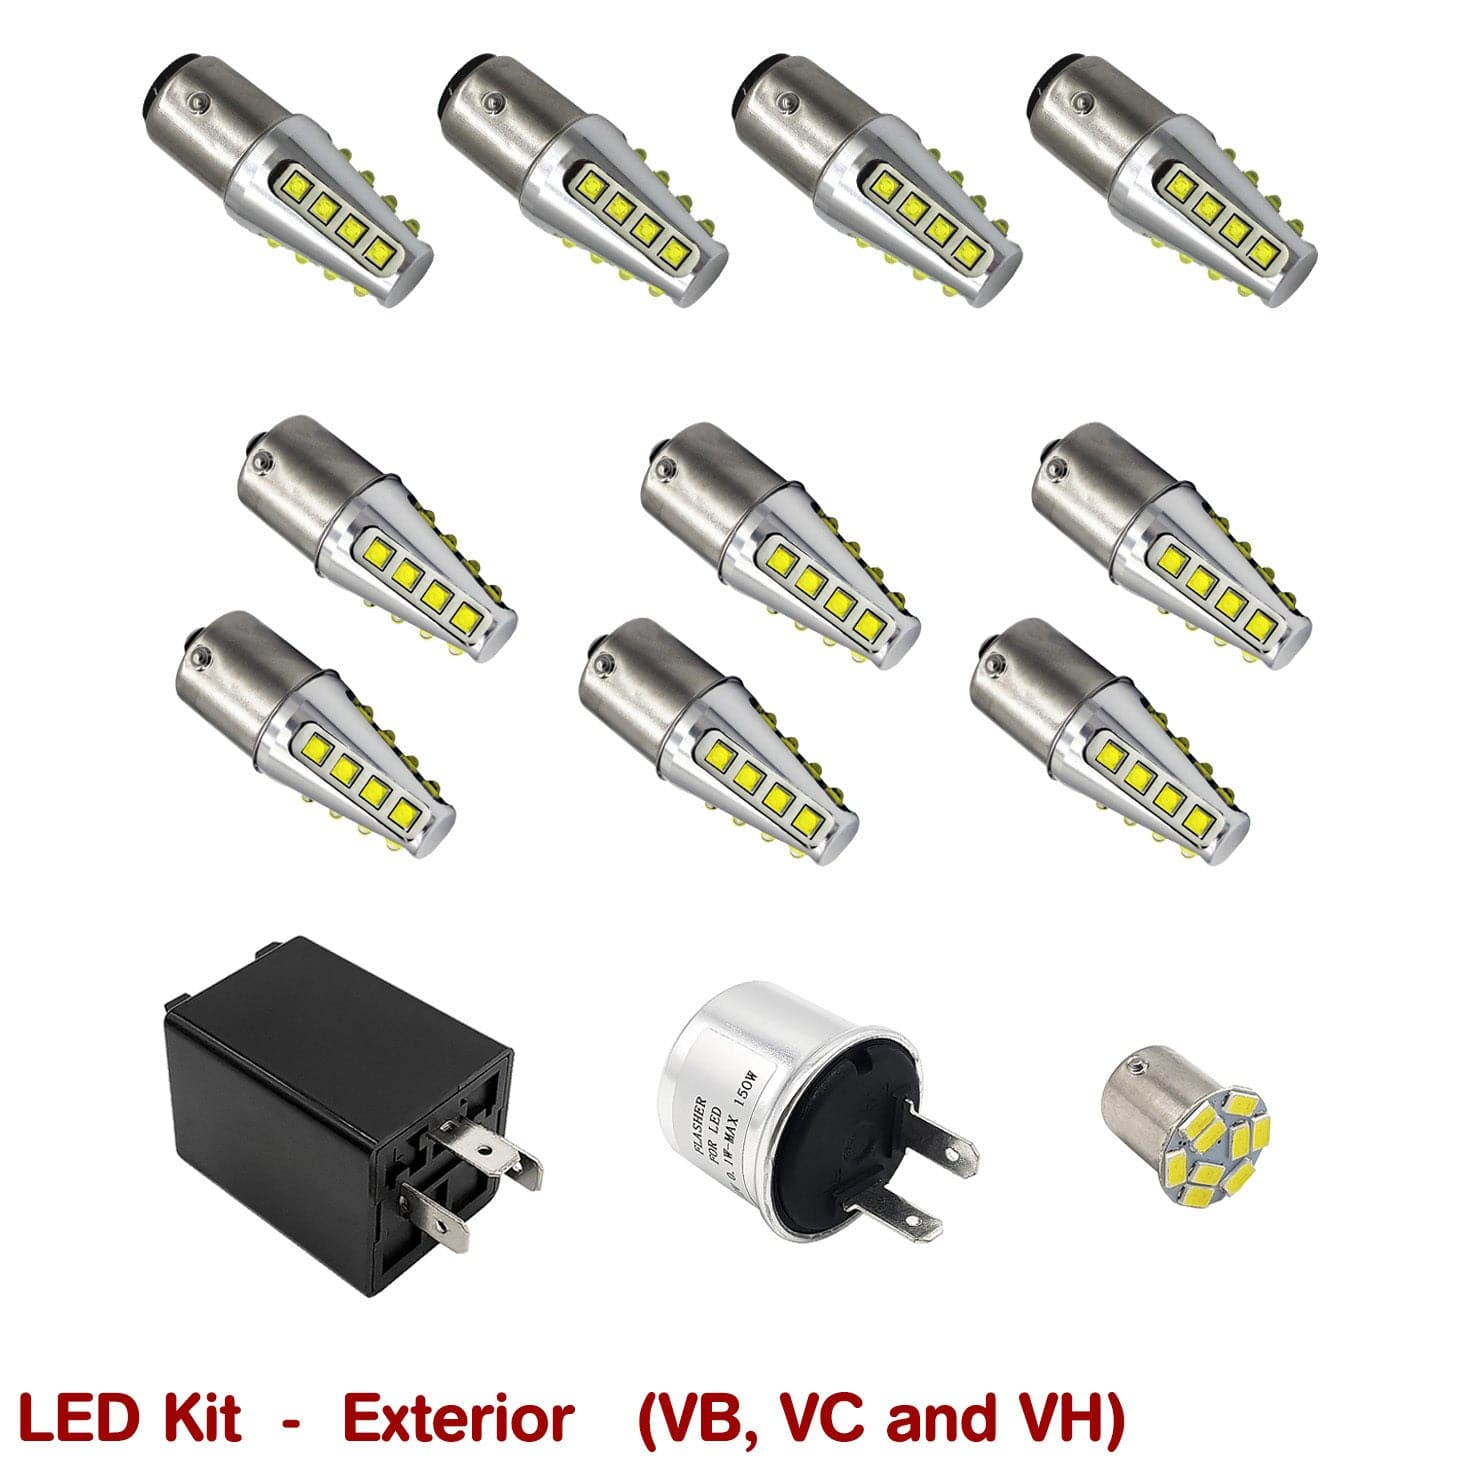 EXTERIOR LED KIT for VB-VH